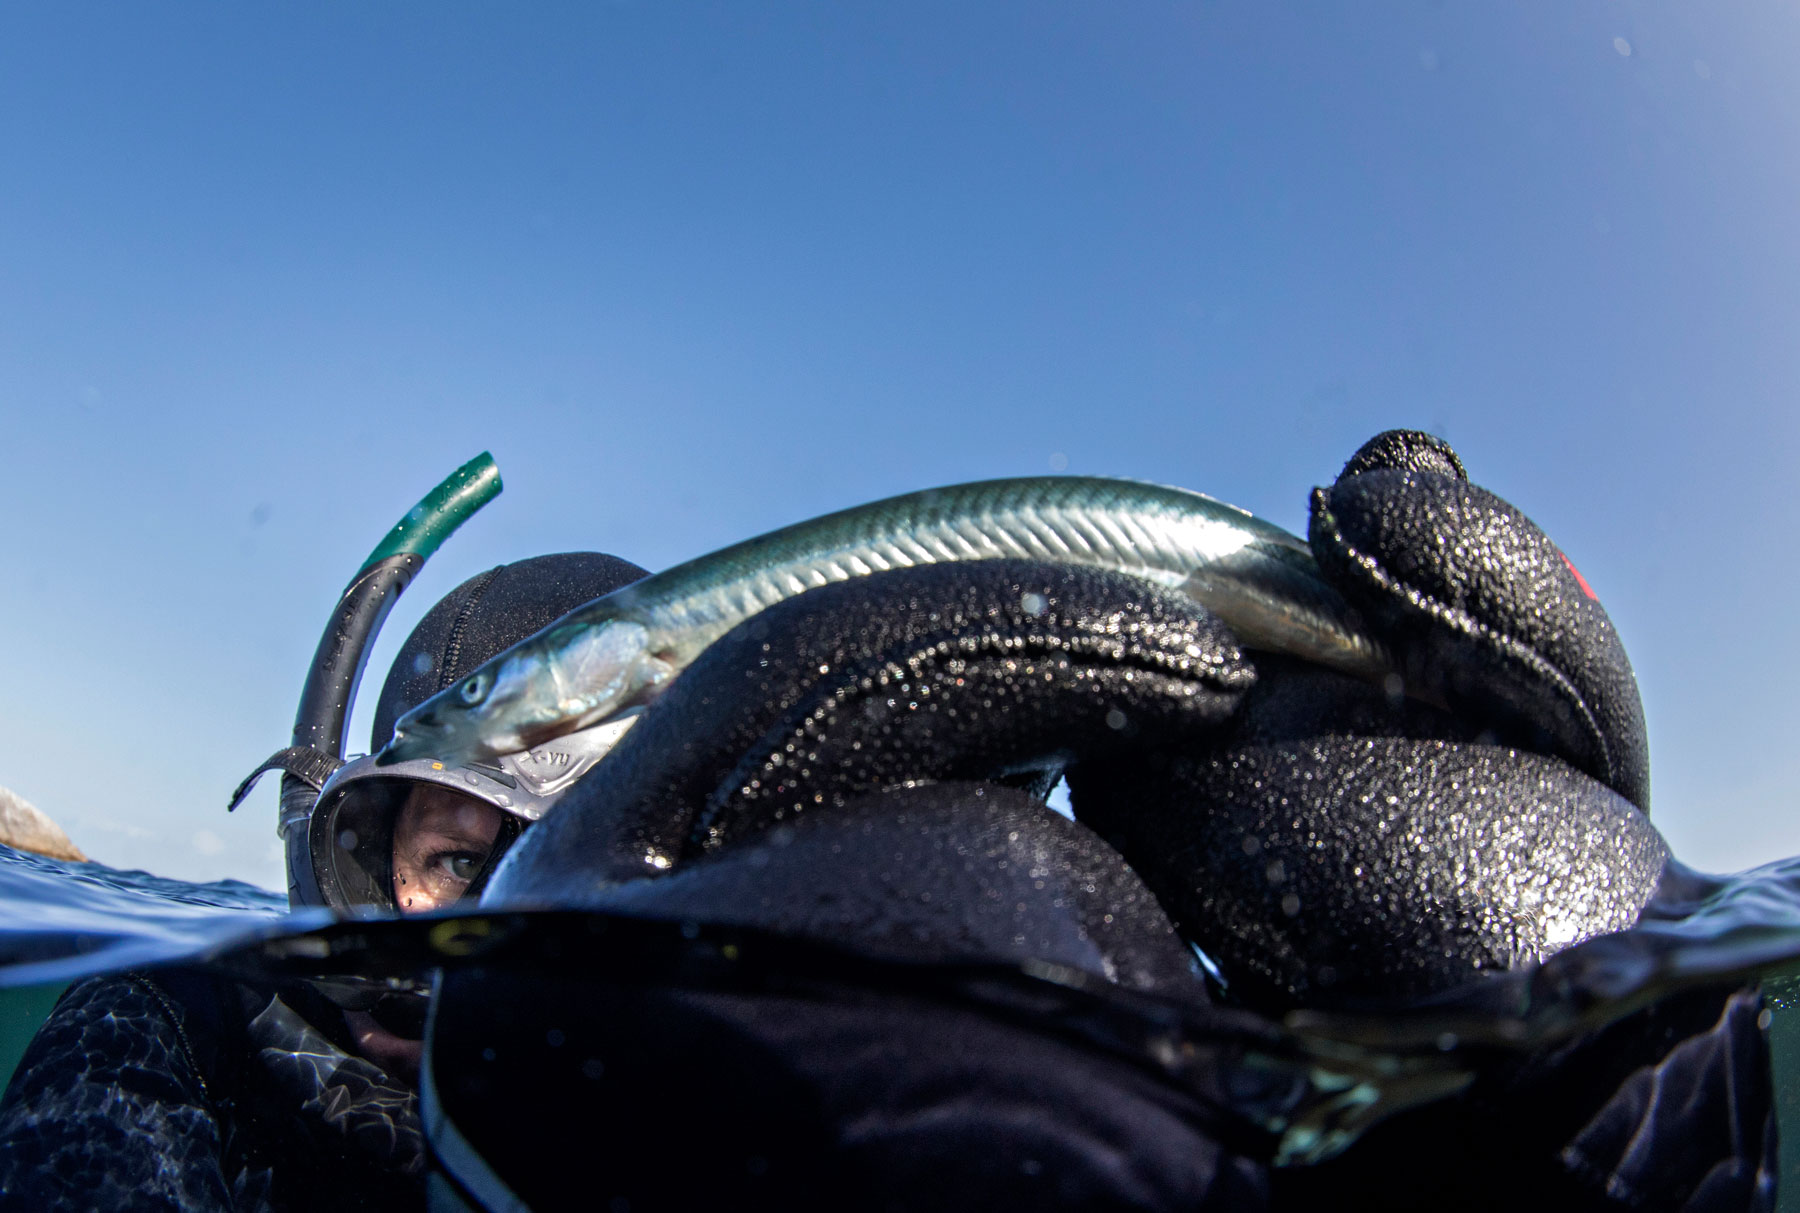 Fra slutten av sommeren og frem til november er høysesong for undervannsfangst. I vannet blir en livløs fisk som har bukket under for naturkreftene funnet.